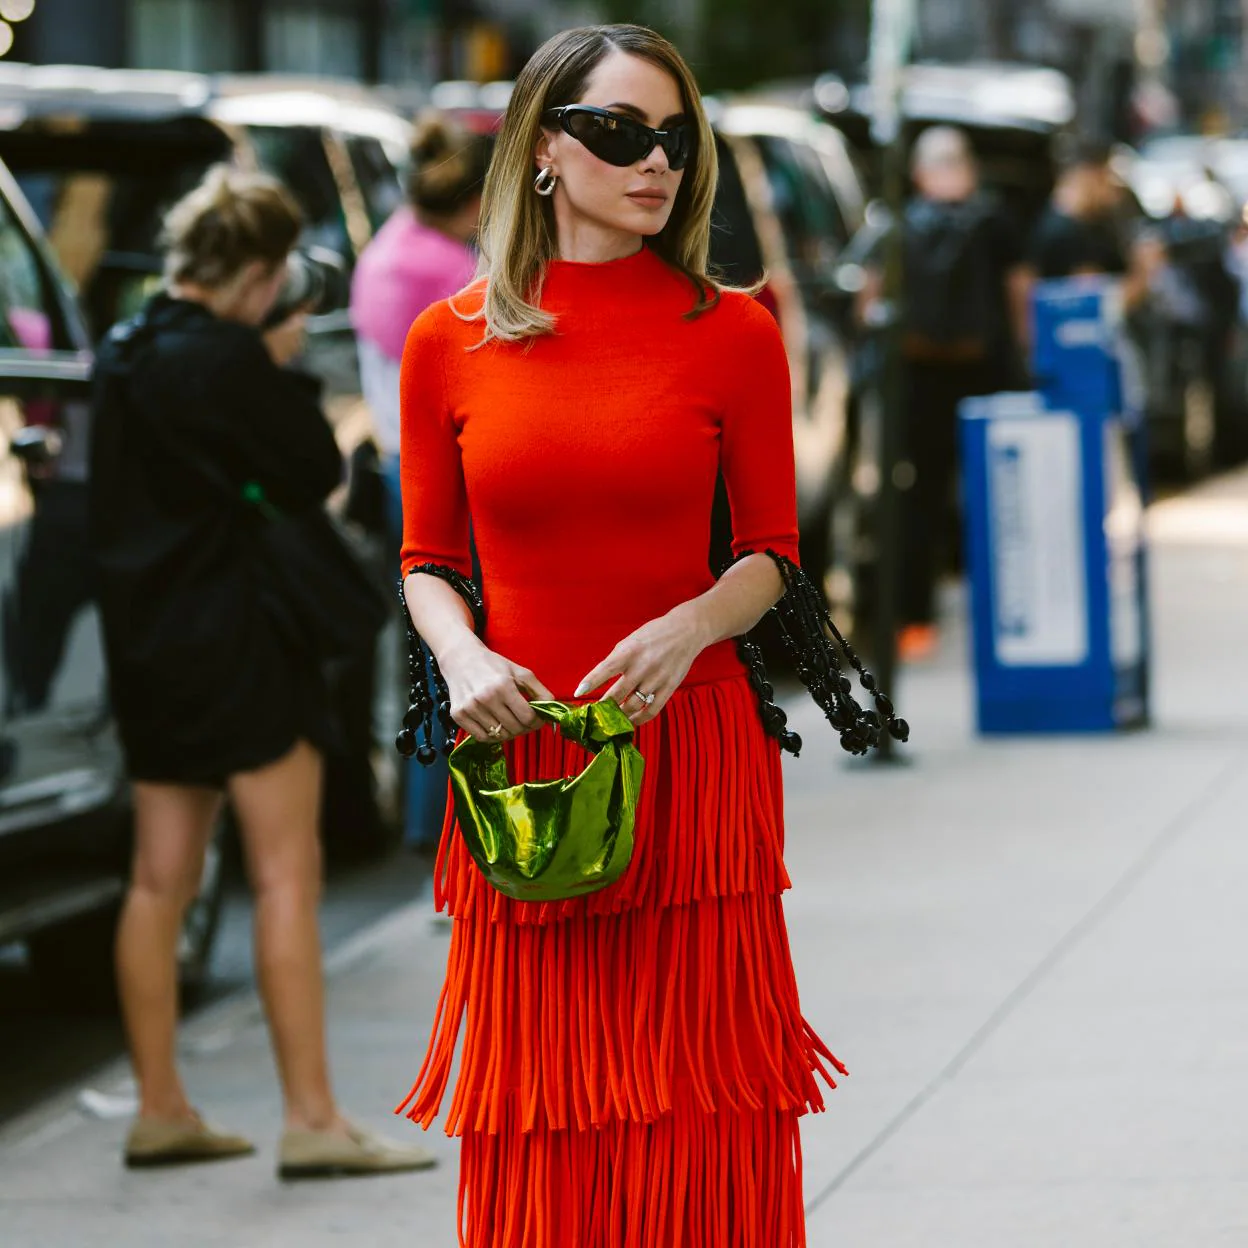 el color que más favorece: Zara tiene los vestidos rojos de Zara